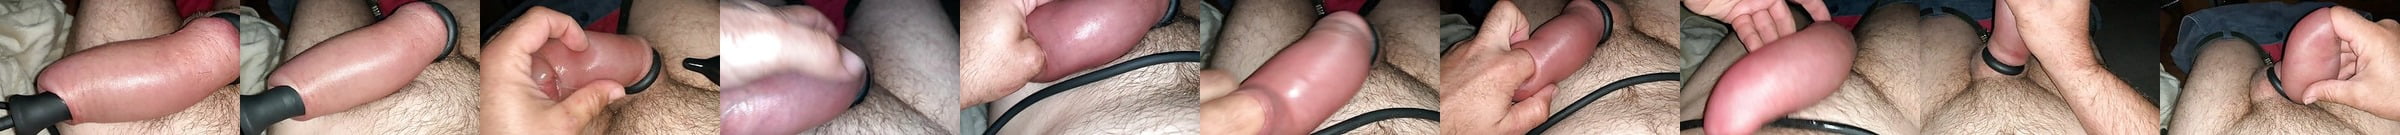 Jacobs Ladder Penis Cock Piercings Cum Free Gay Hd Porn 74 Xhamster 